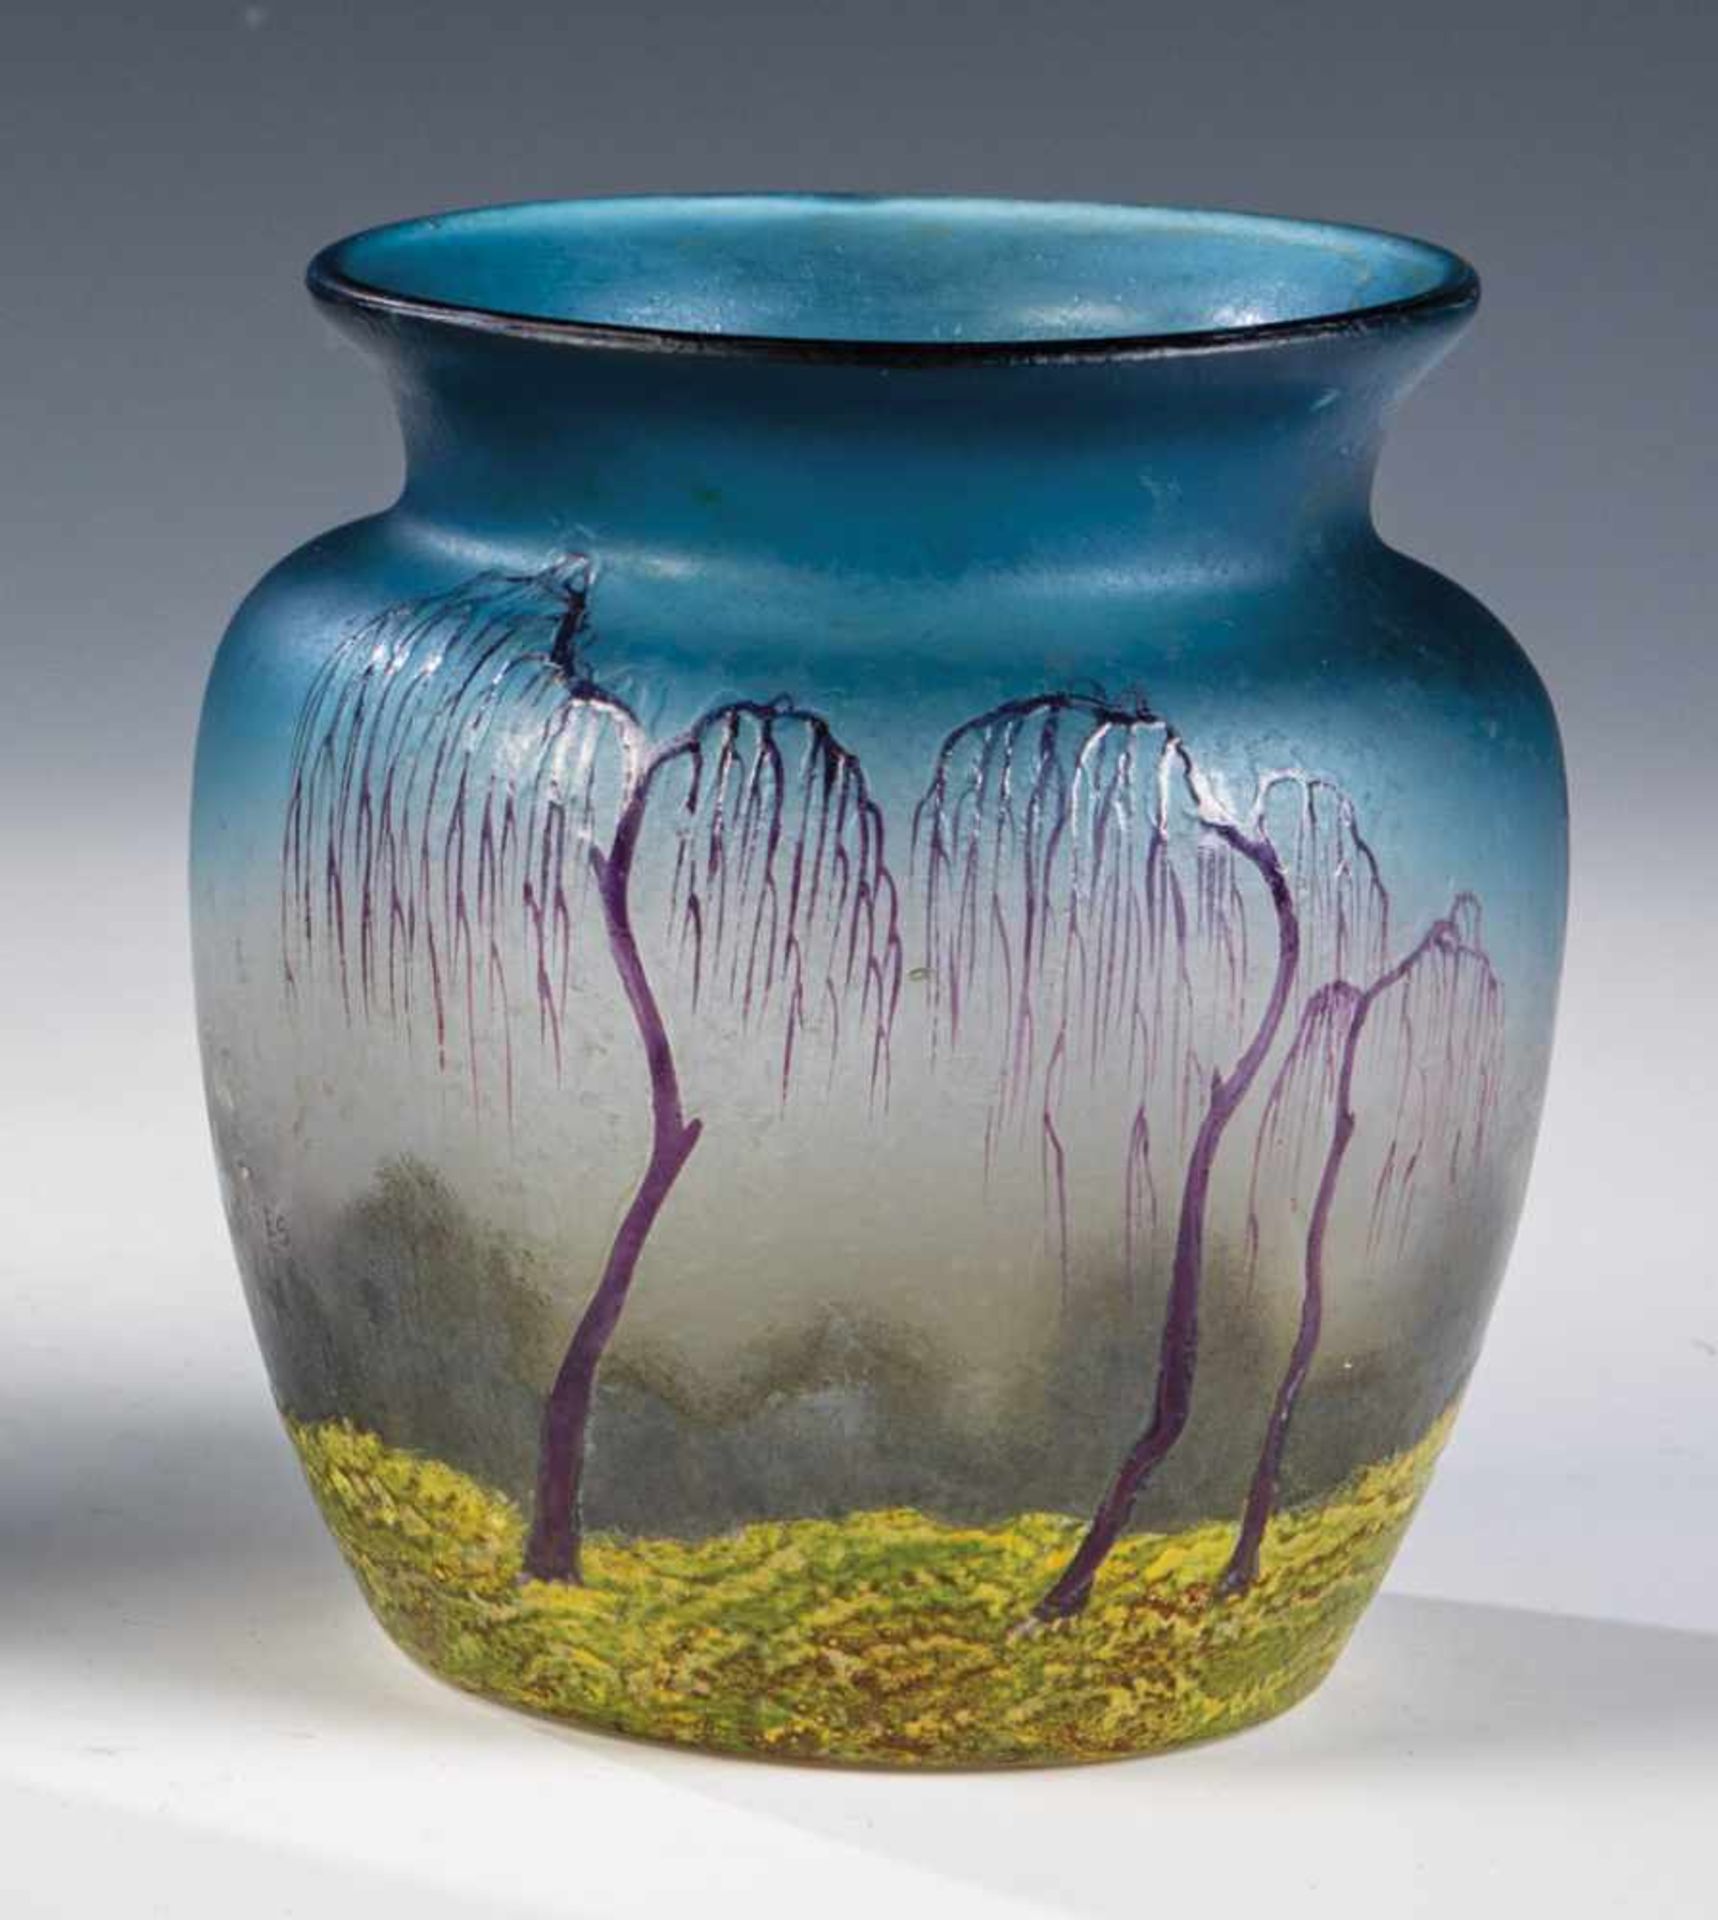 Vase mit BaumlandschaftMuller Frères, Lunéville, um 1920 Farbloses Glas, verlaufend blau